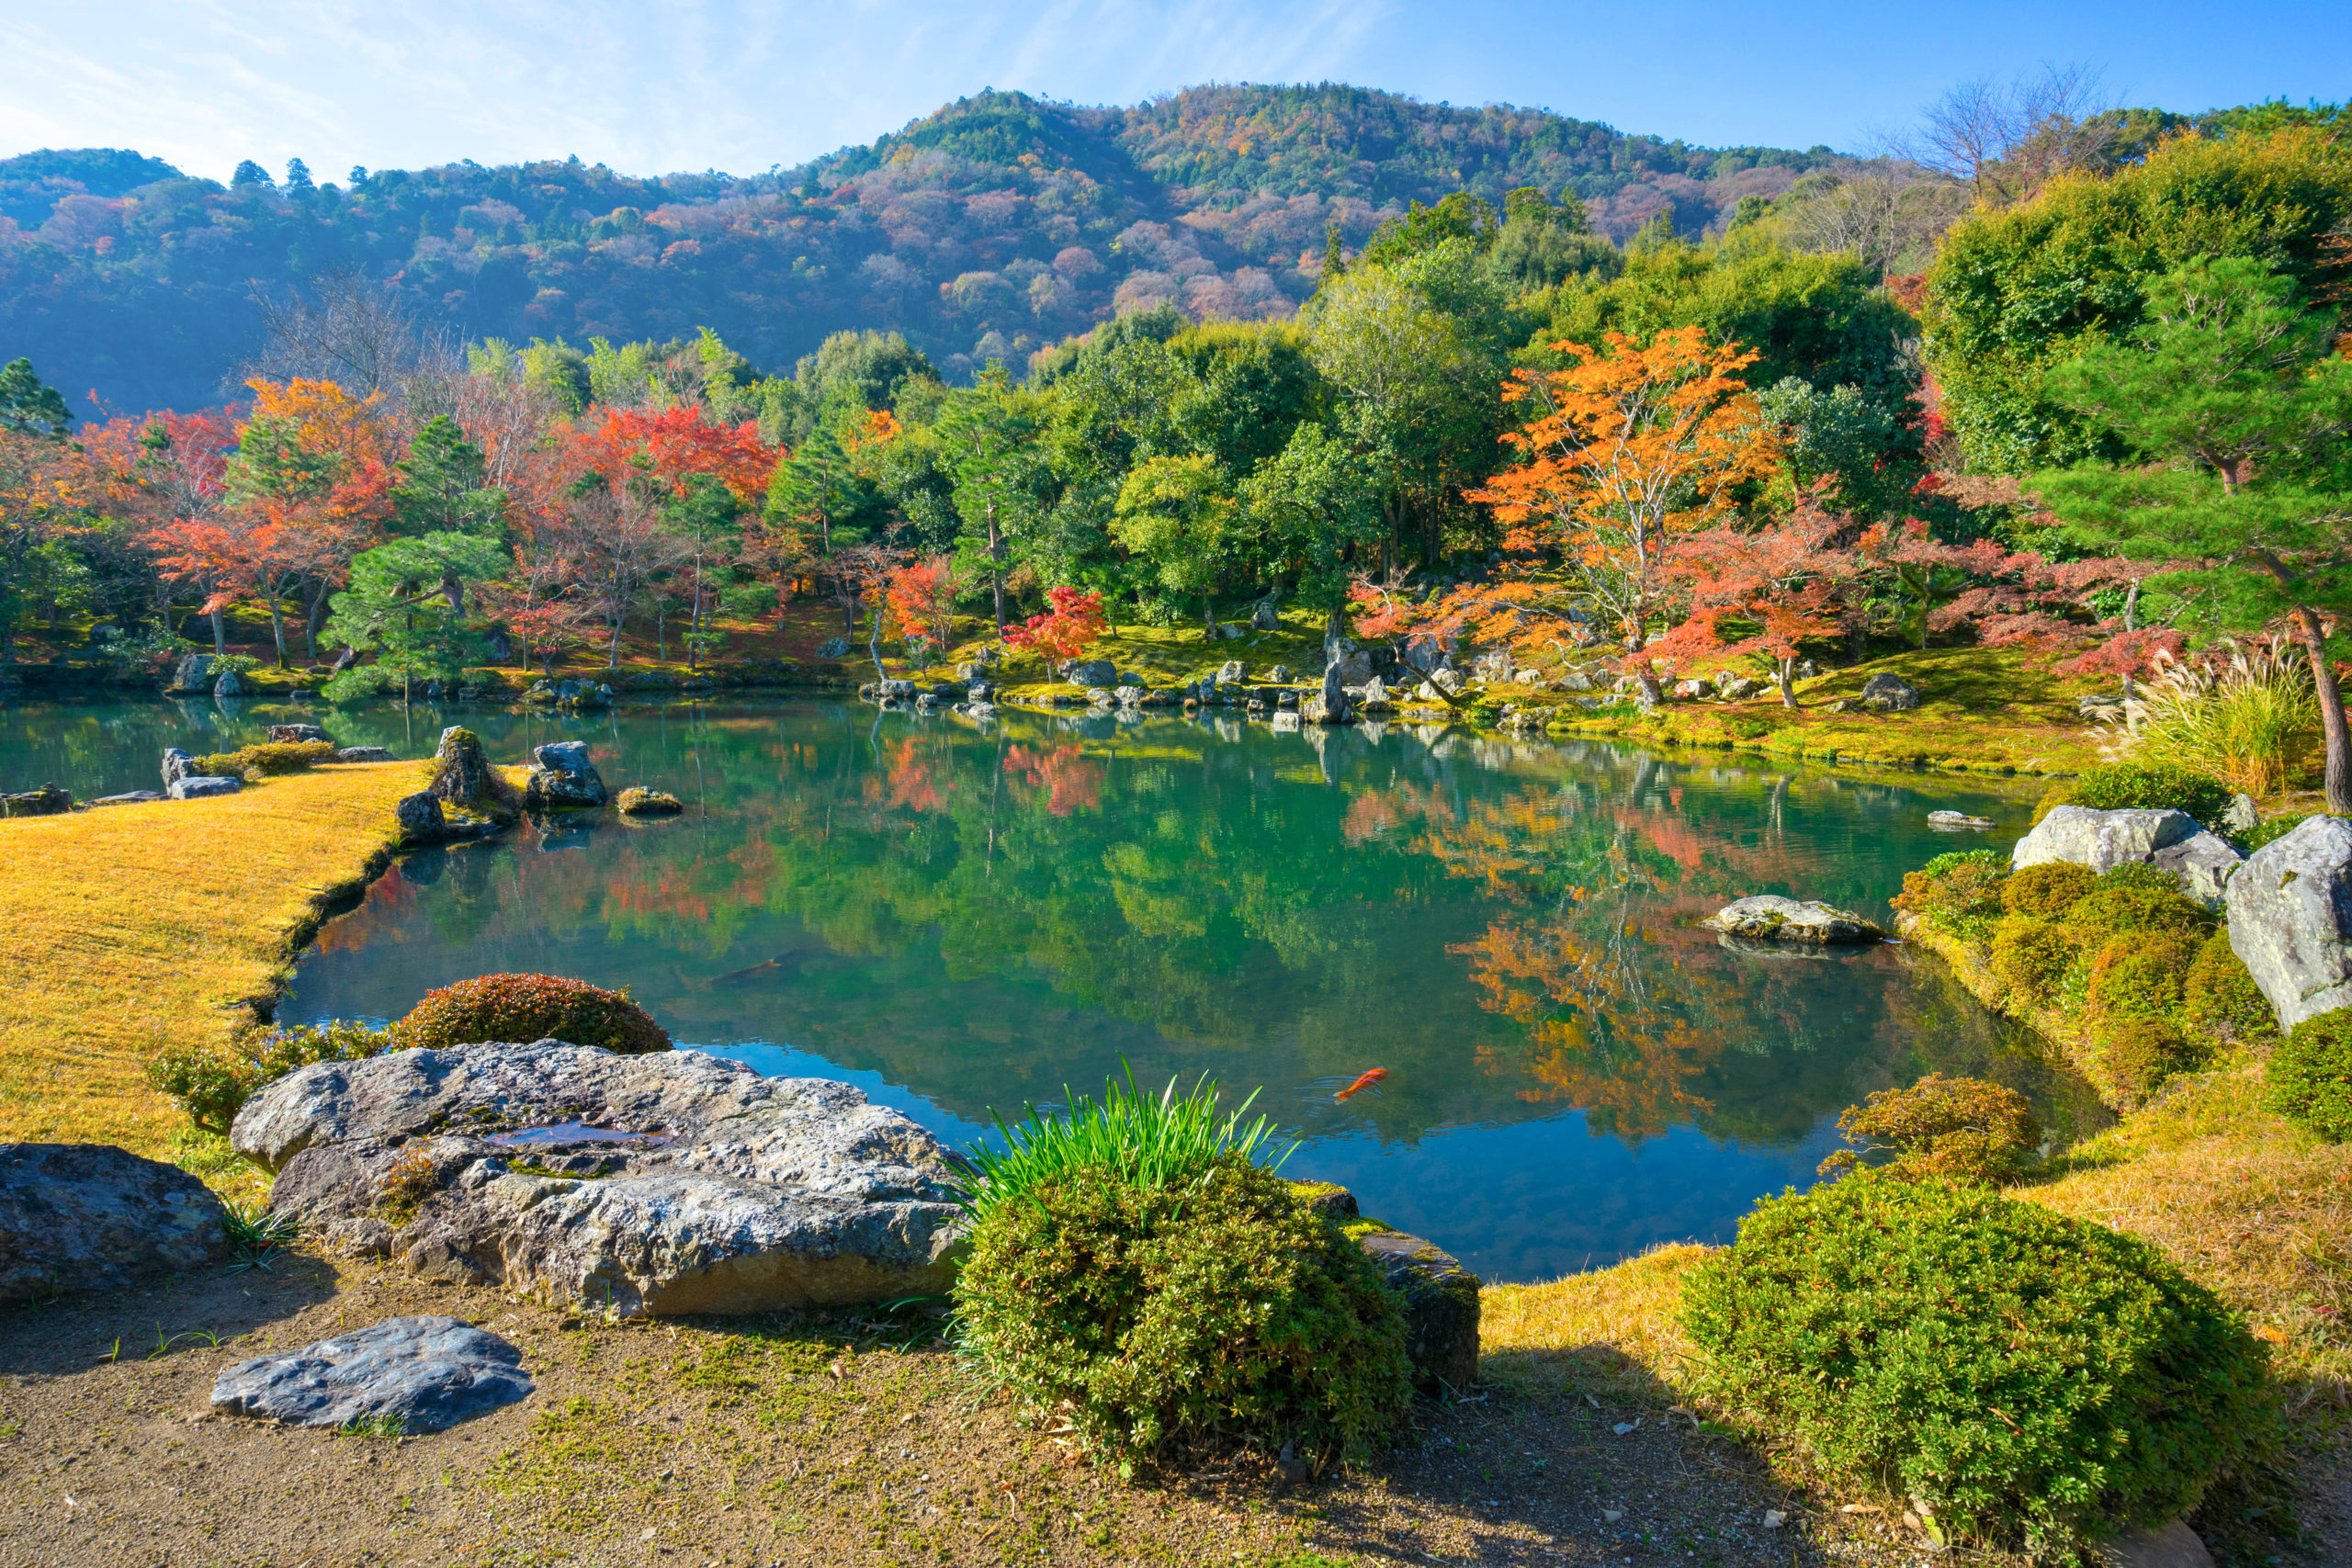 Sogenchi pond garden at Tenryuji Temple in Kyoto, Japan